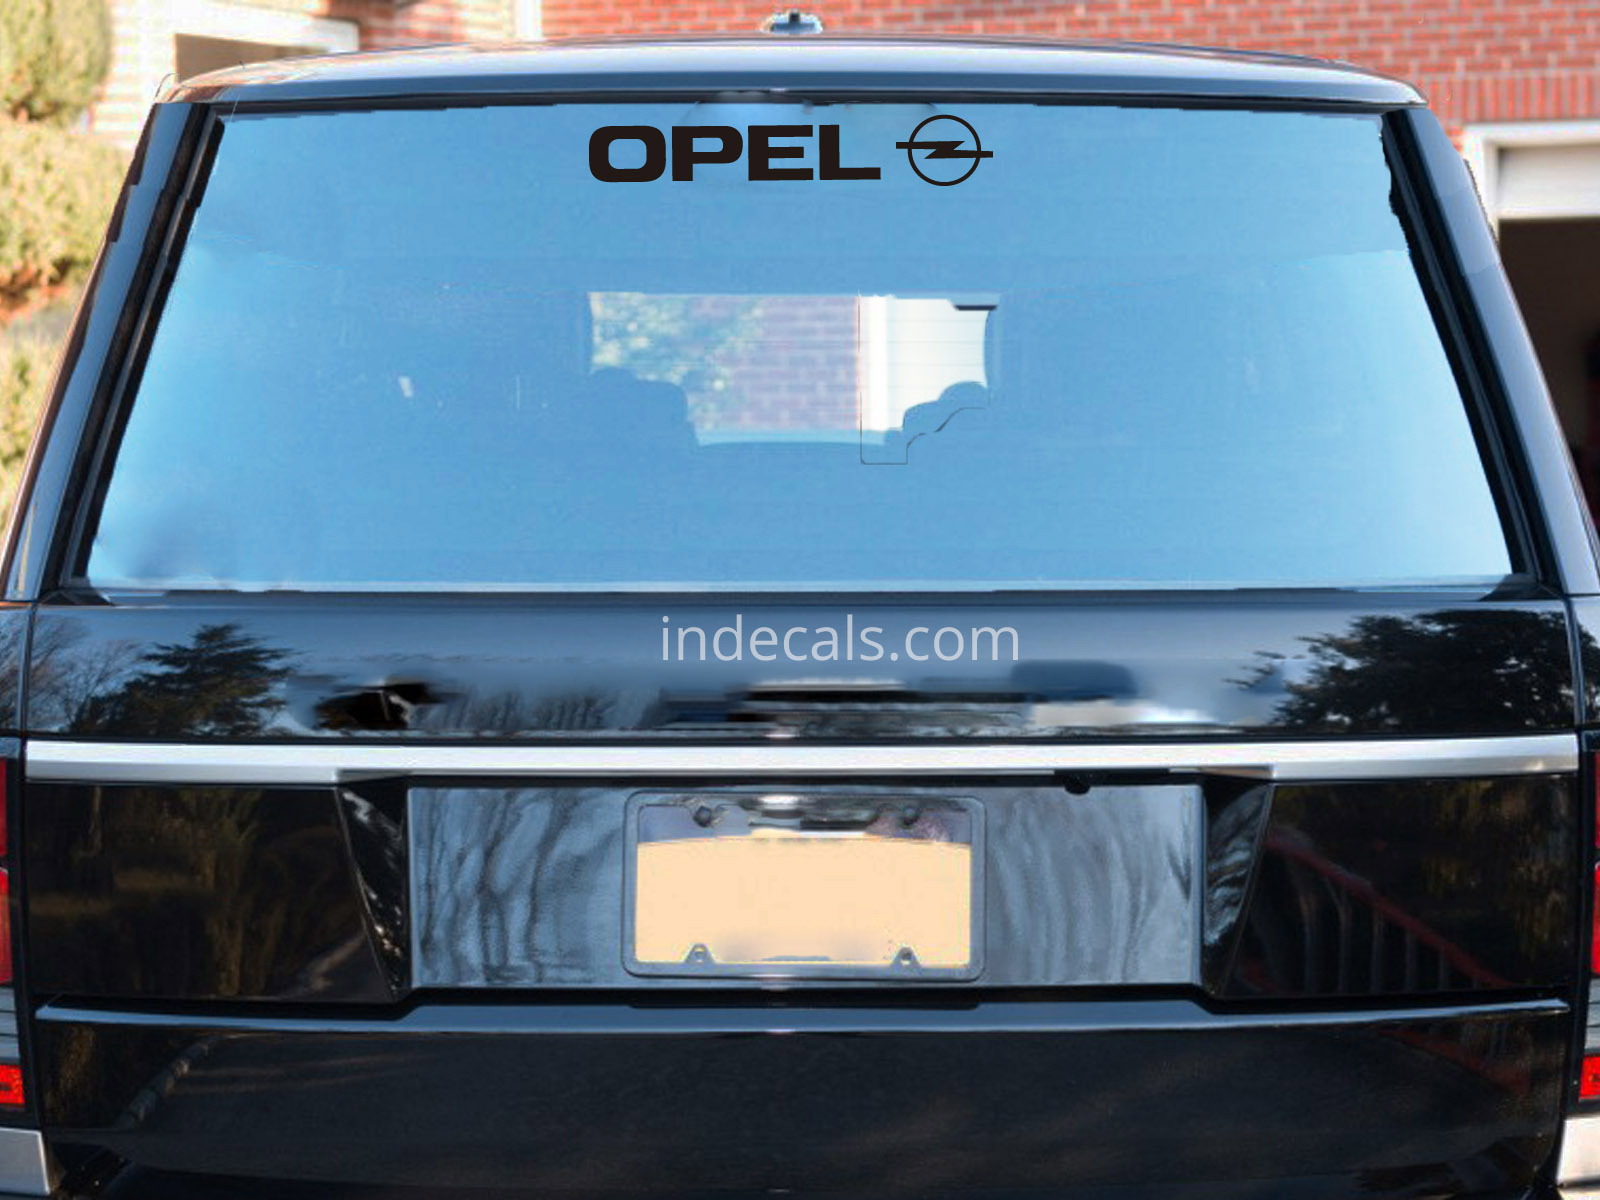 1 x Opel Sticker for Windshield or Back Window - Black